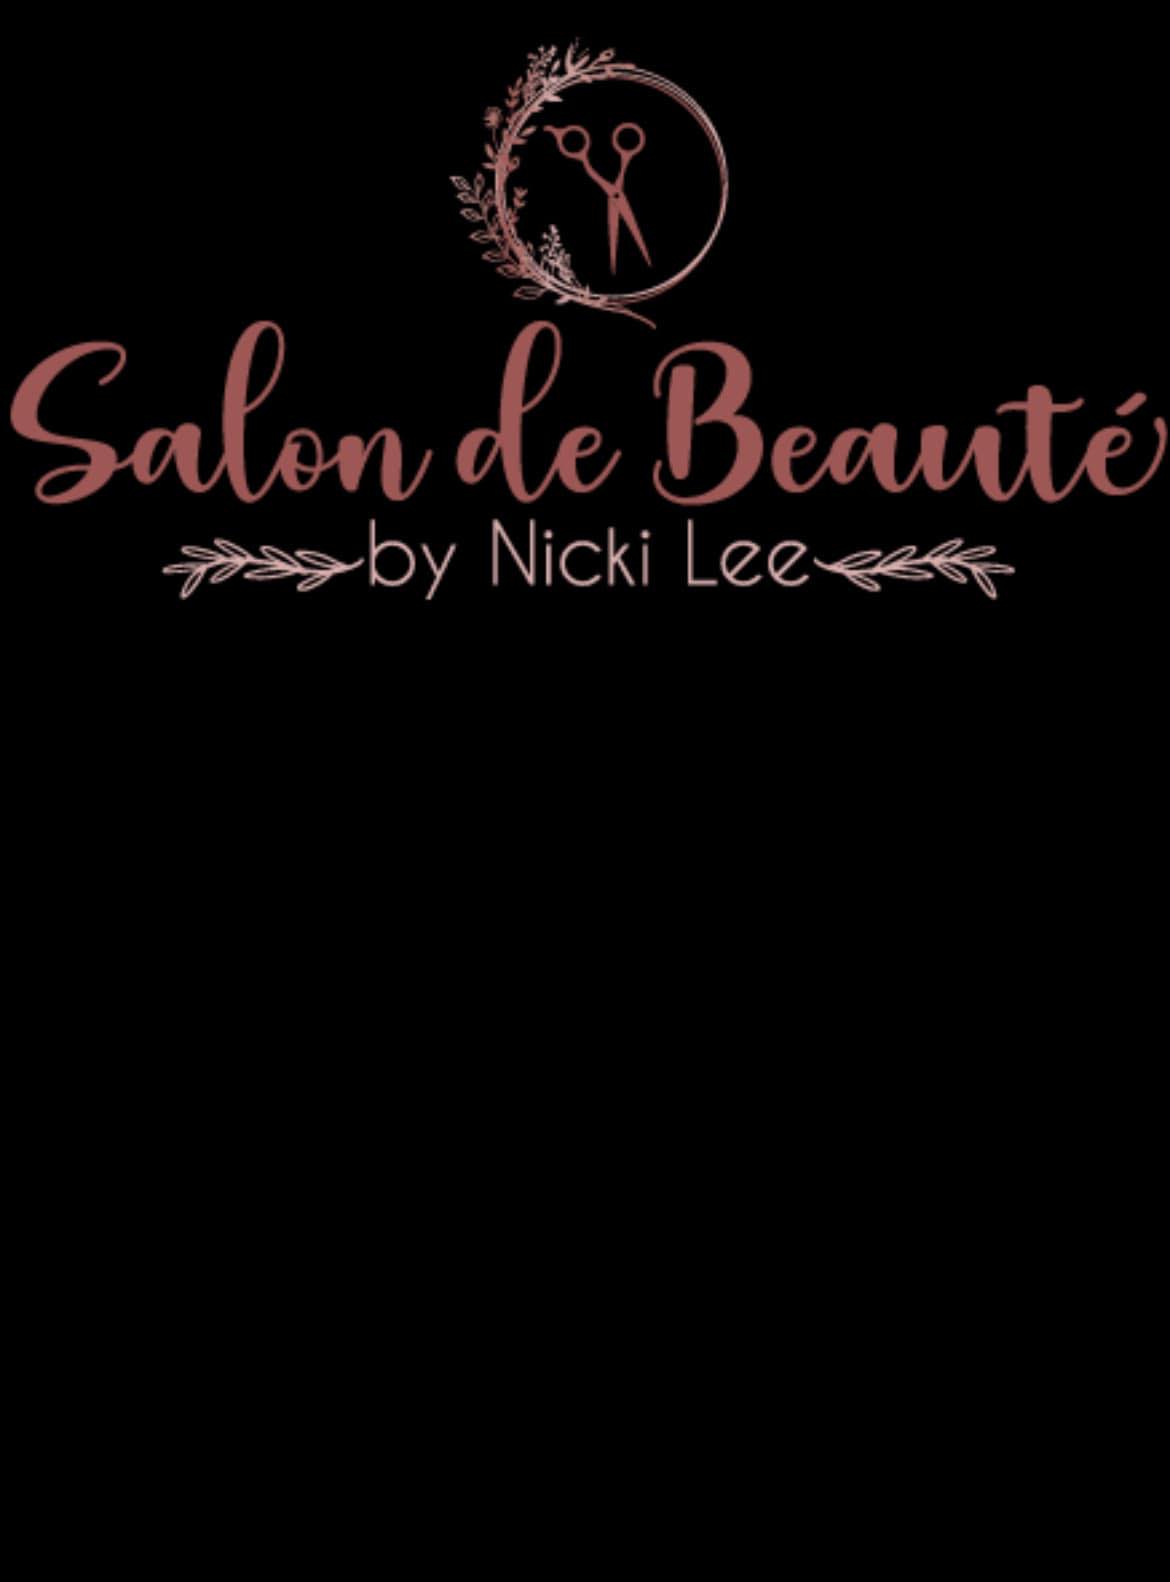 Salon de Beaute by Nicki Lee